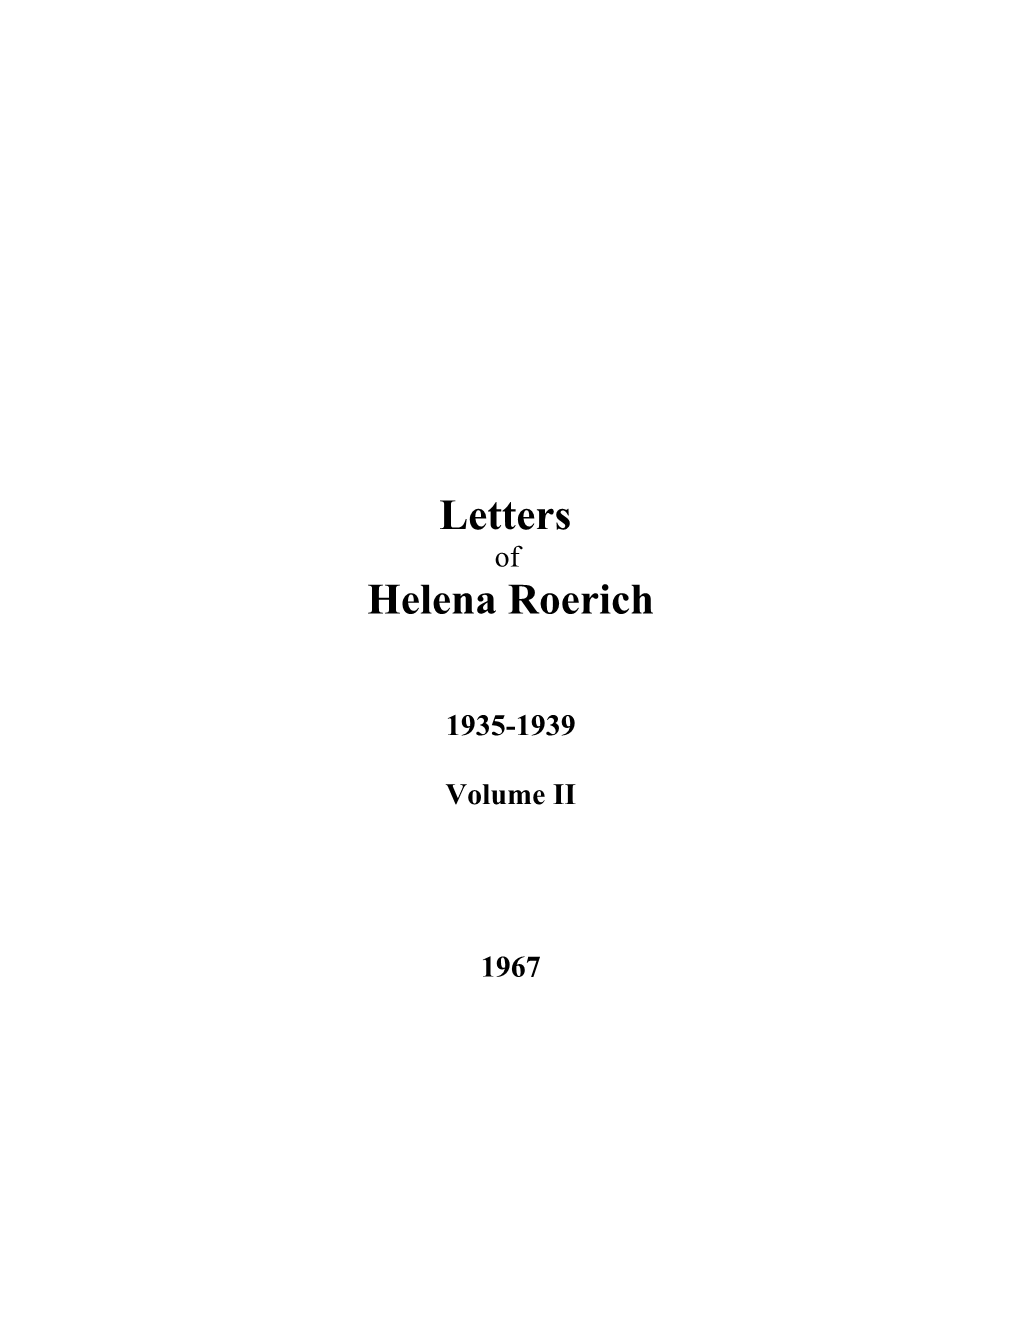 Letters of Helena Roerich II